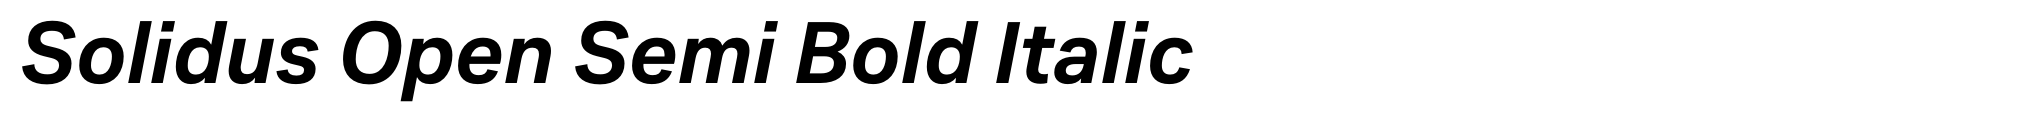 Solidus Open Semi Bold Italic image